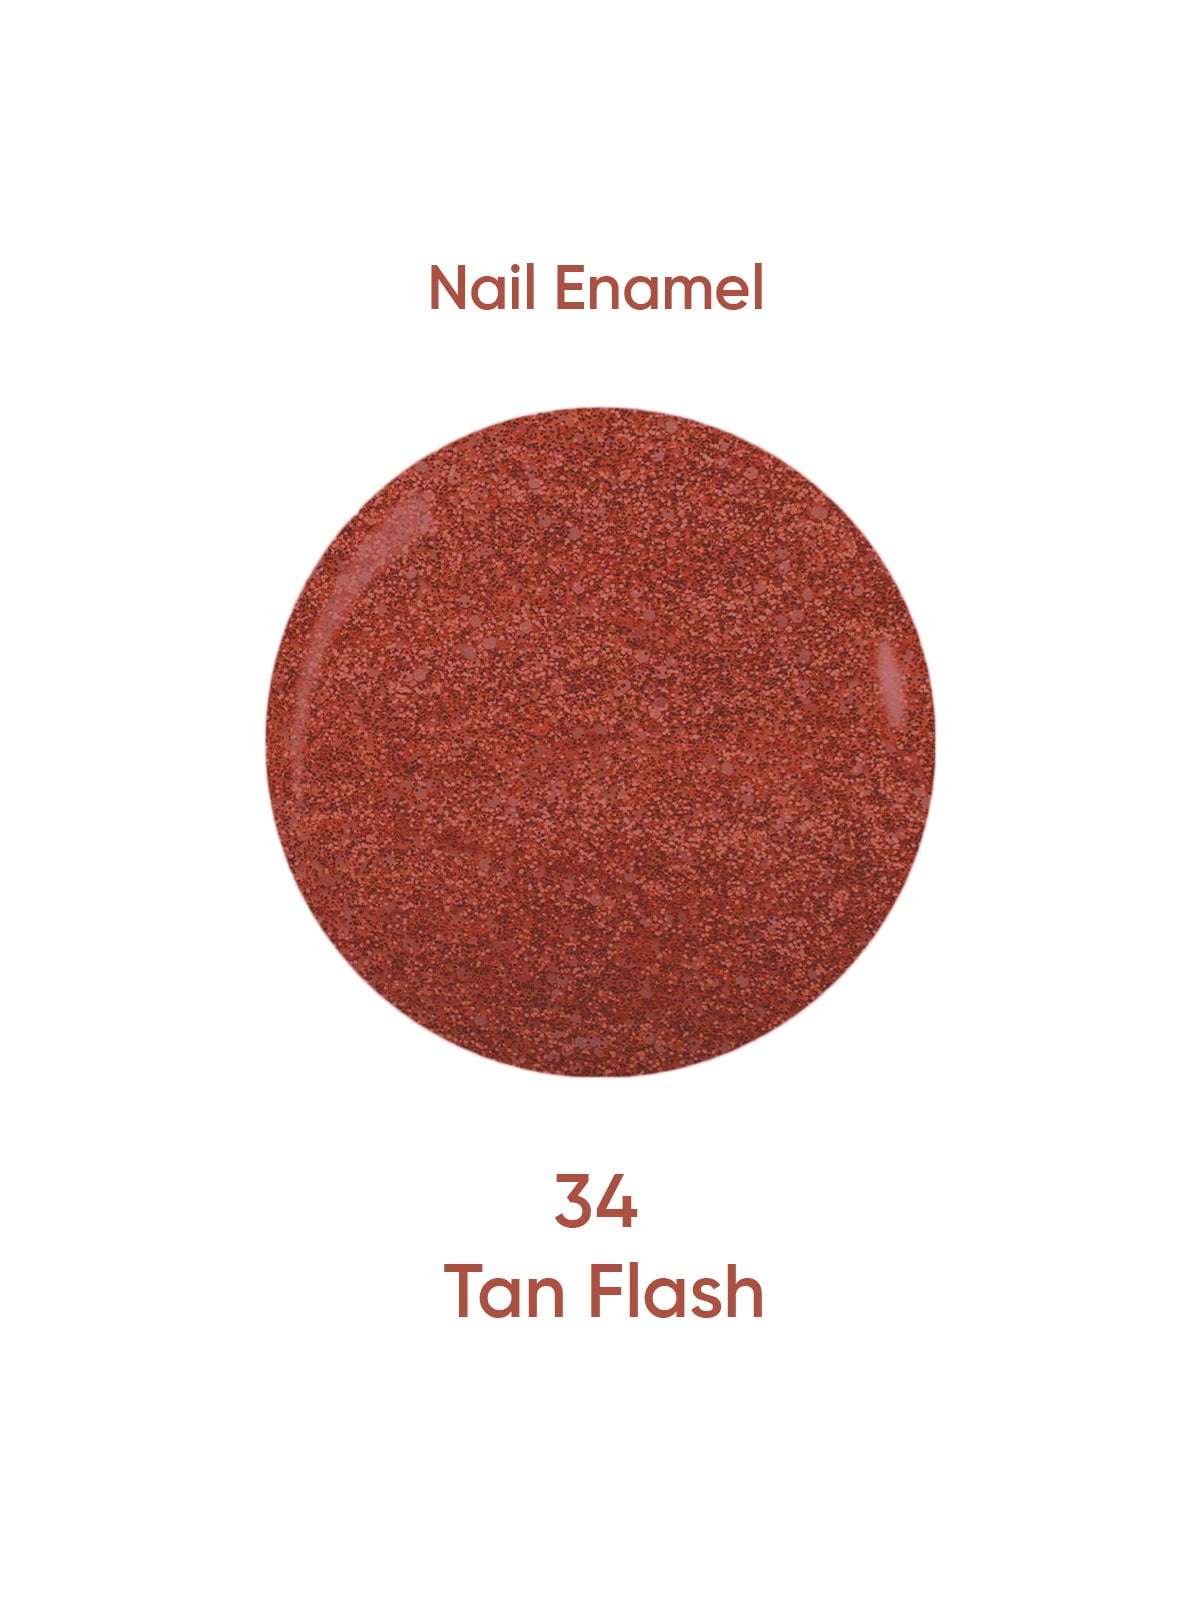 Nail Enamel 34 Tan Flash